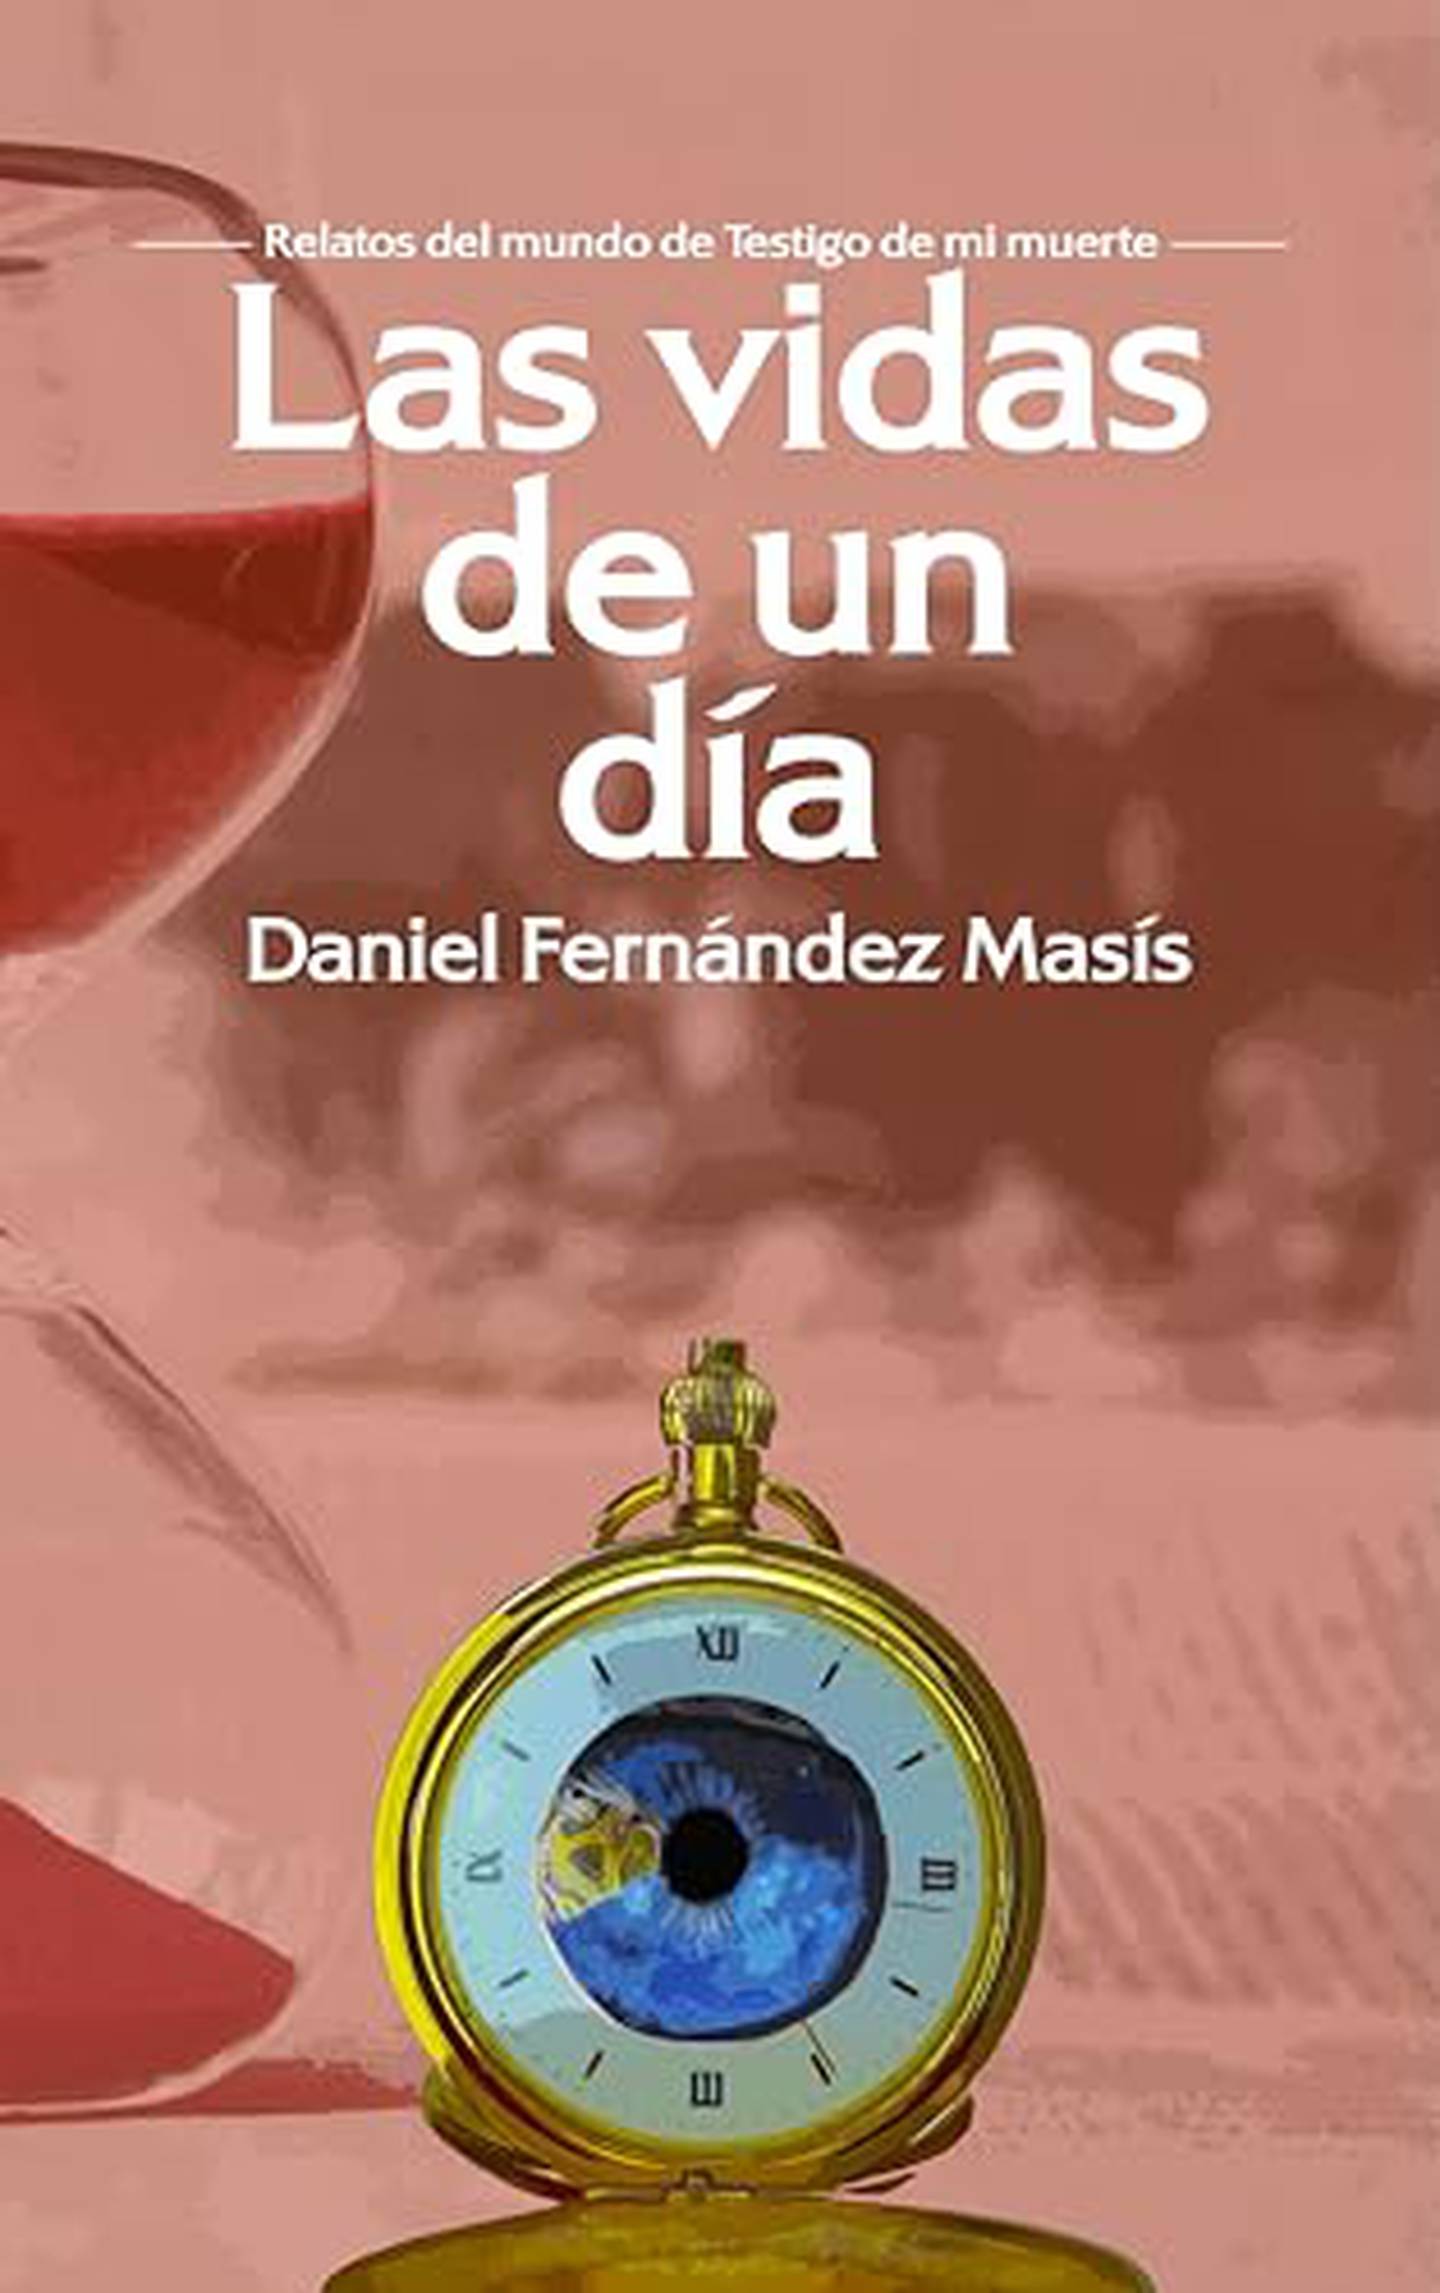 Así se ve la portada del libro 'Las vidas de un día', cuarta publicación del costarricense Daniel Fernández. Foto: Cortesía